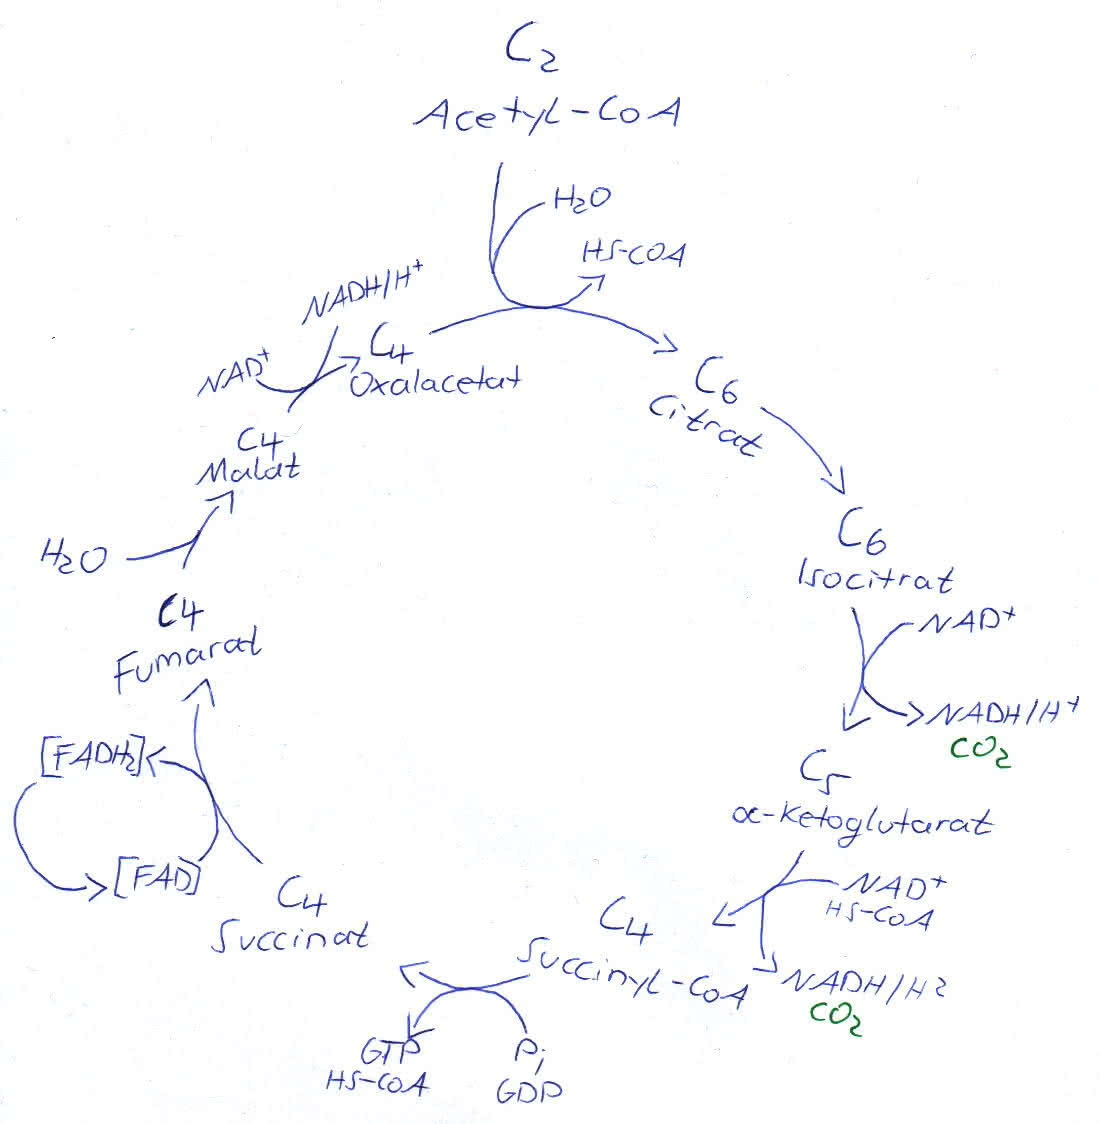 Citratzyklus - Krebs-zyklus - Zitronensäurezyklus - Tricarbonsäurezyklus